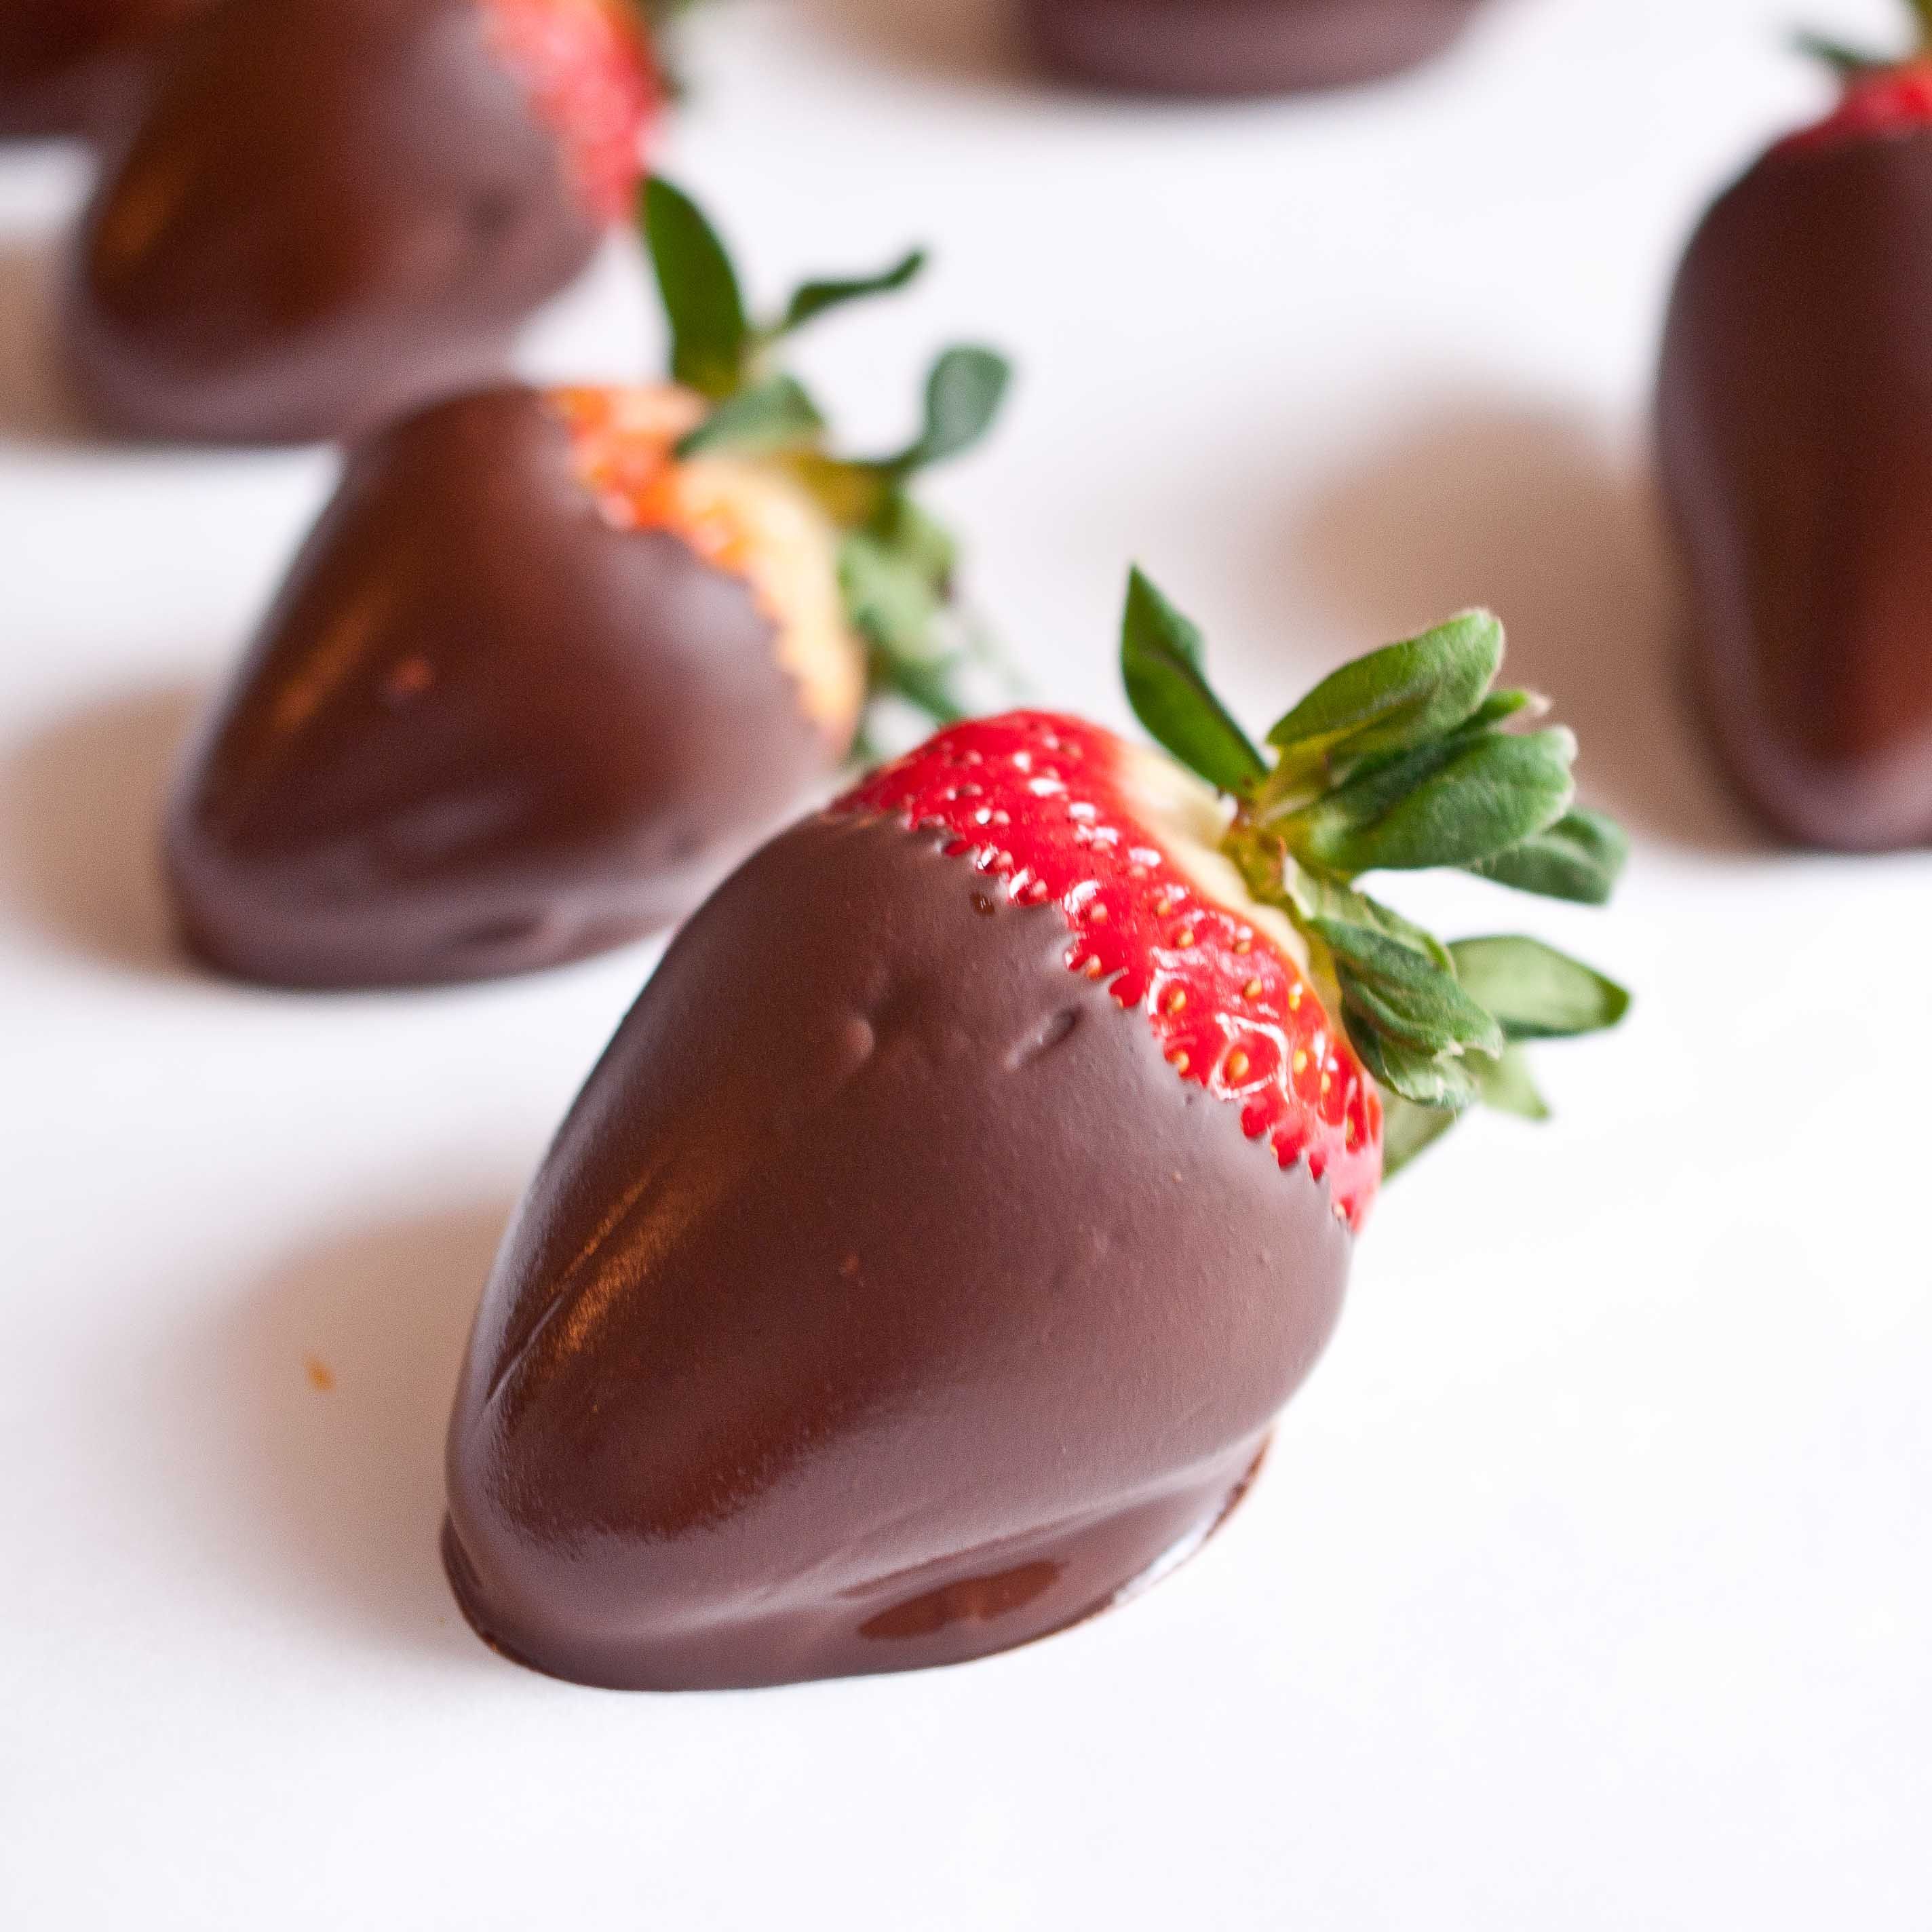 Schokolade überzogene Erdbeeren